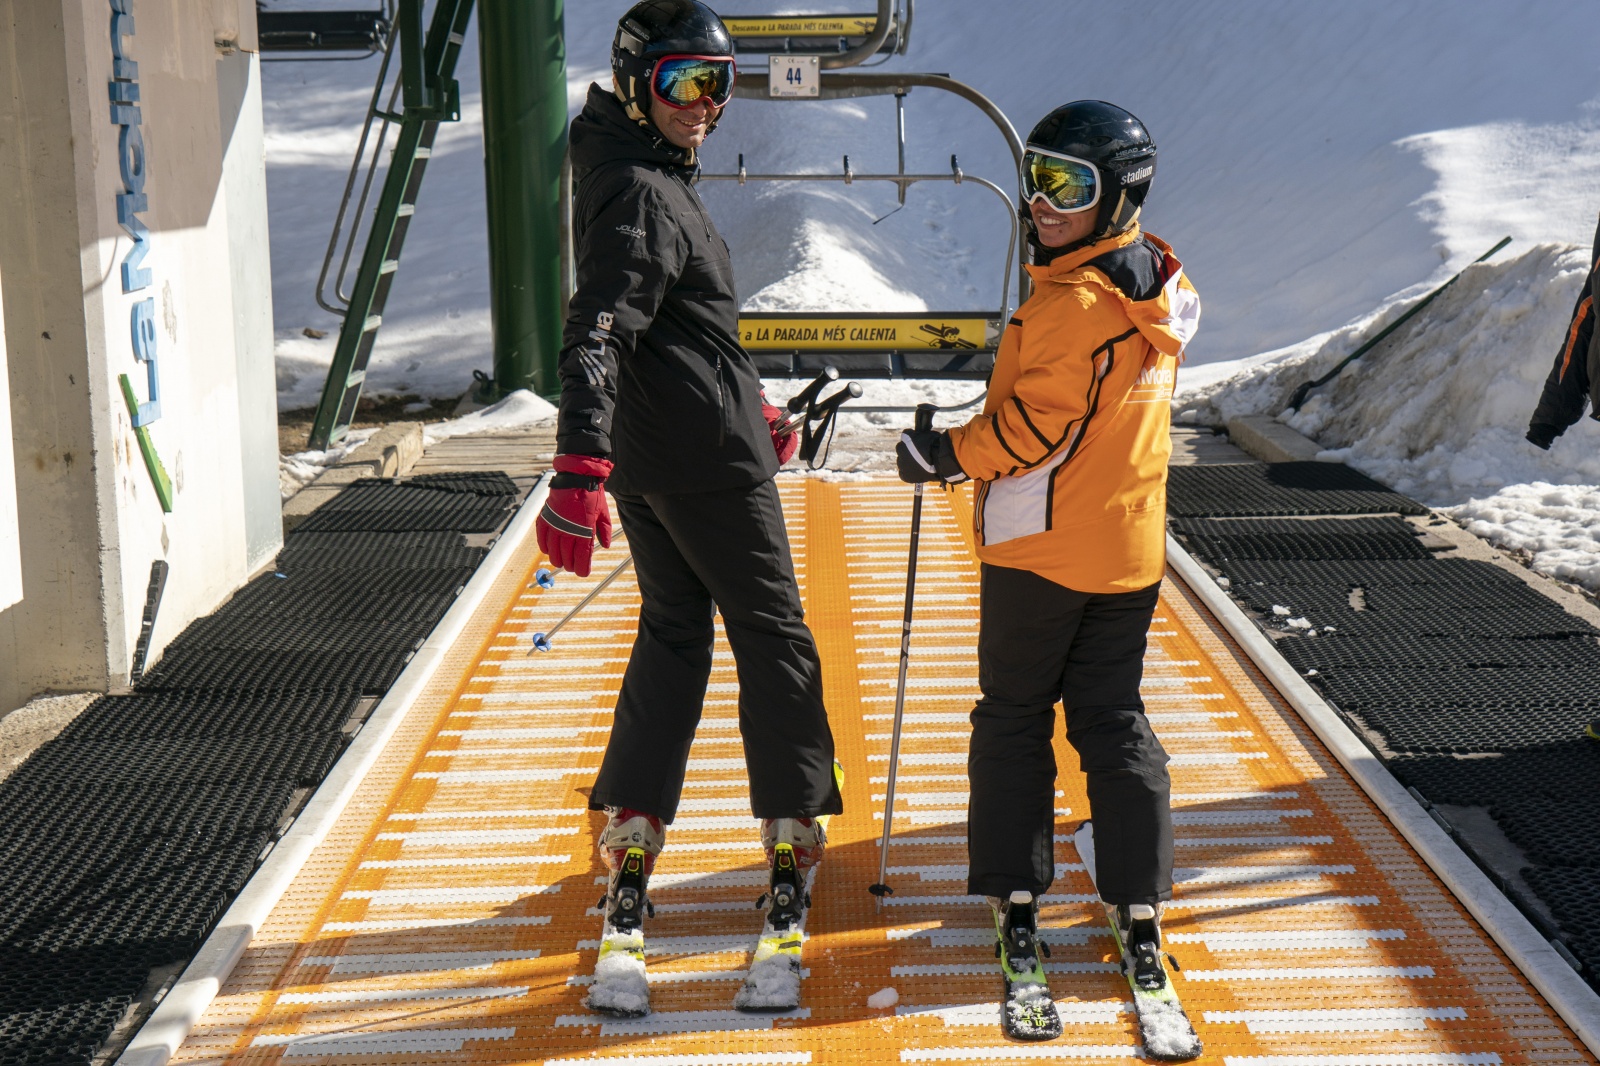 Alquiler ropa de esquí | La Molina Invierno